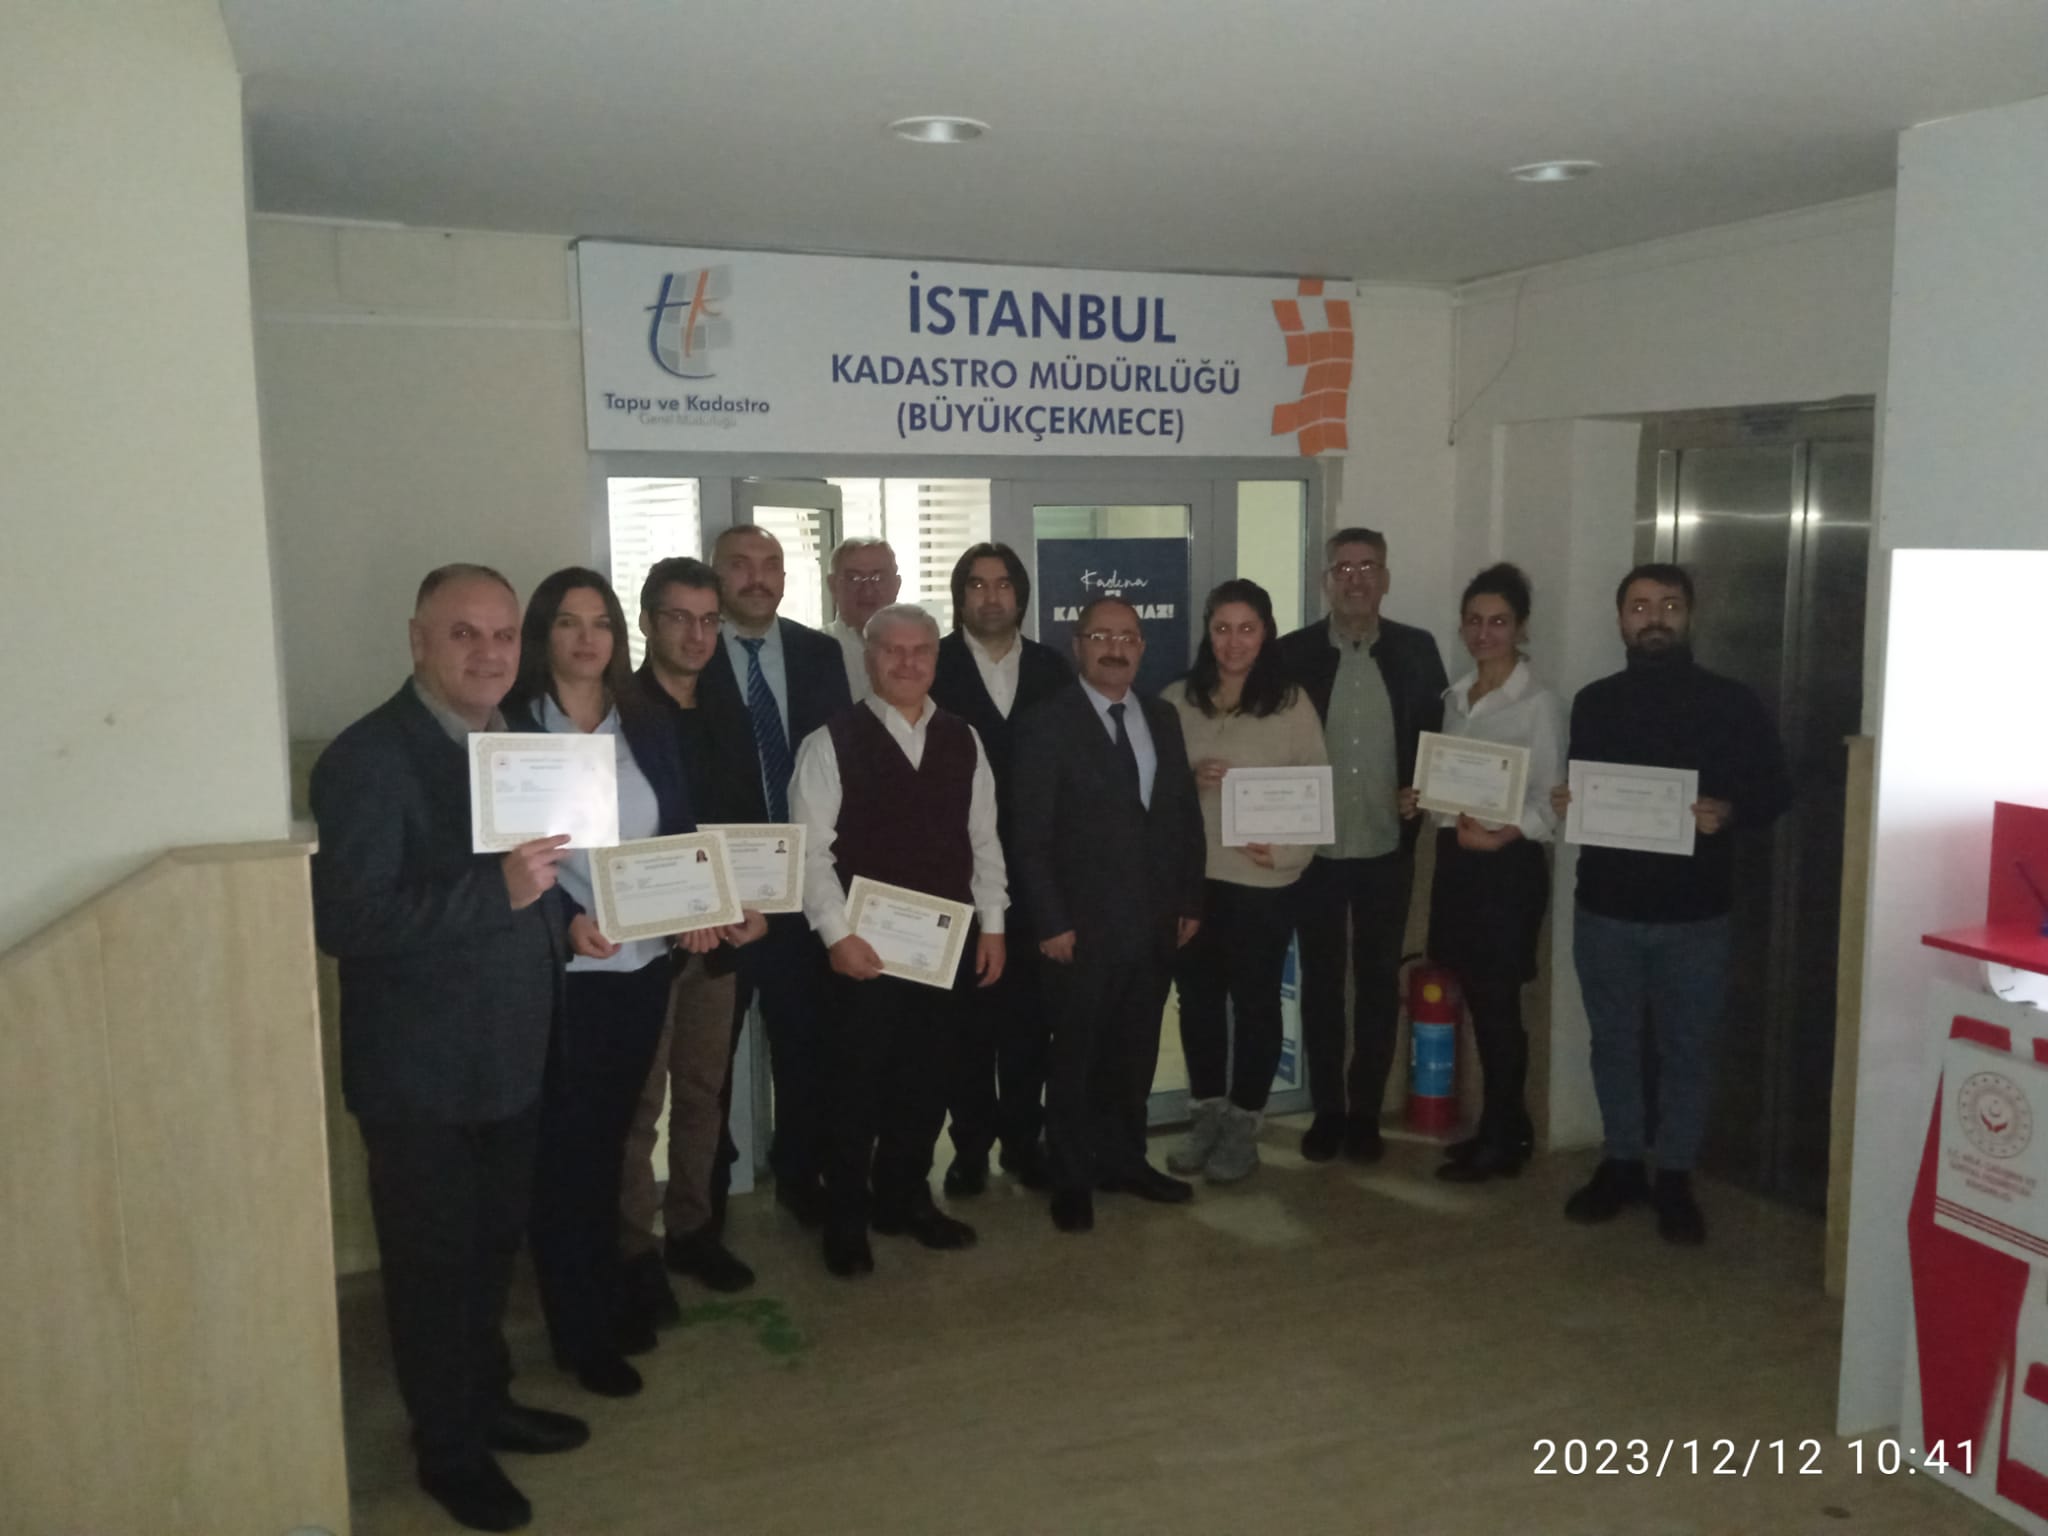 İstanbul Kadastro Müdürlüğü Çalışanları Başarı Belgesi ile Ödüllendirildi